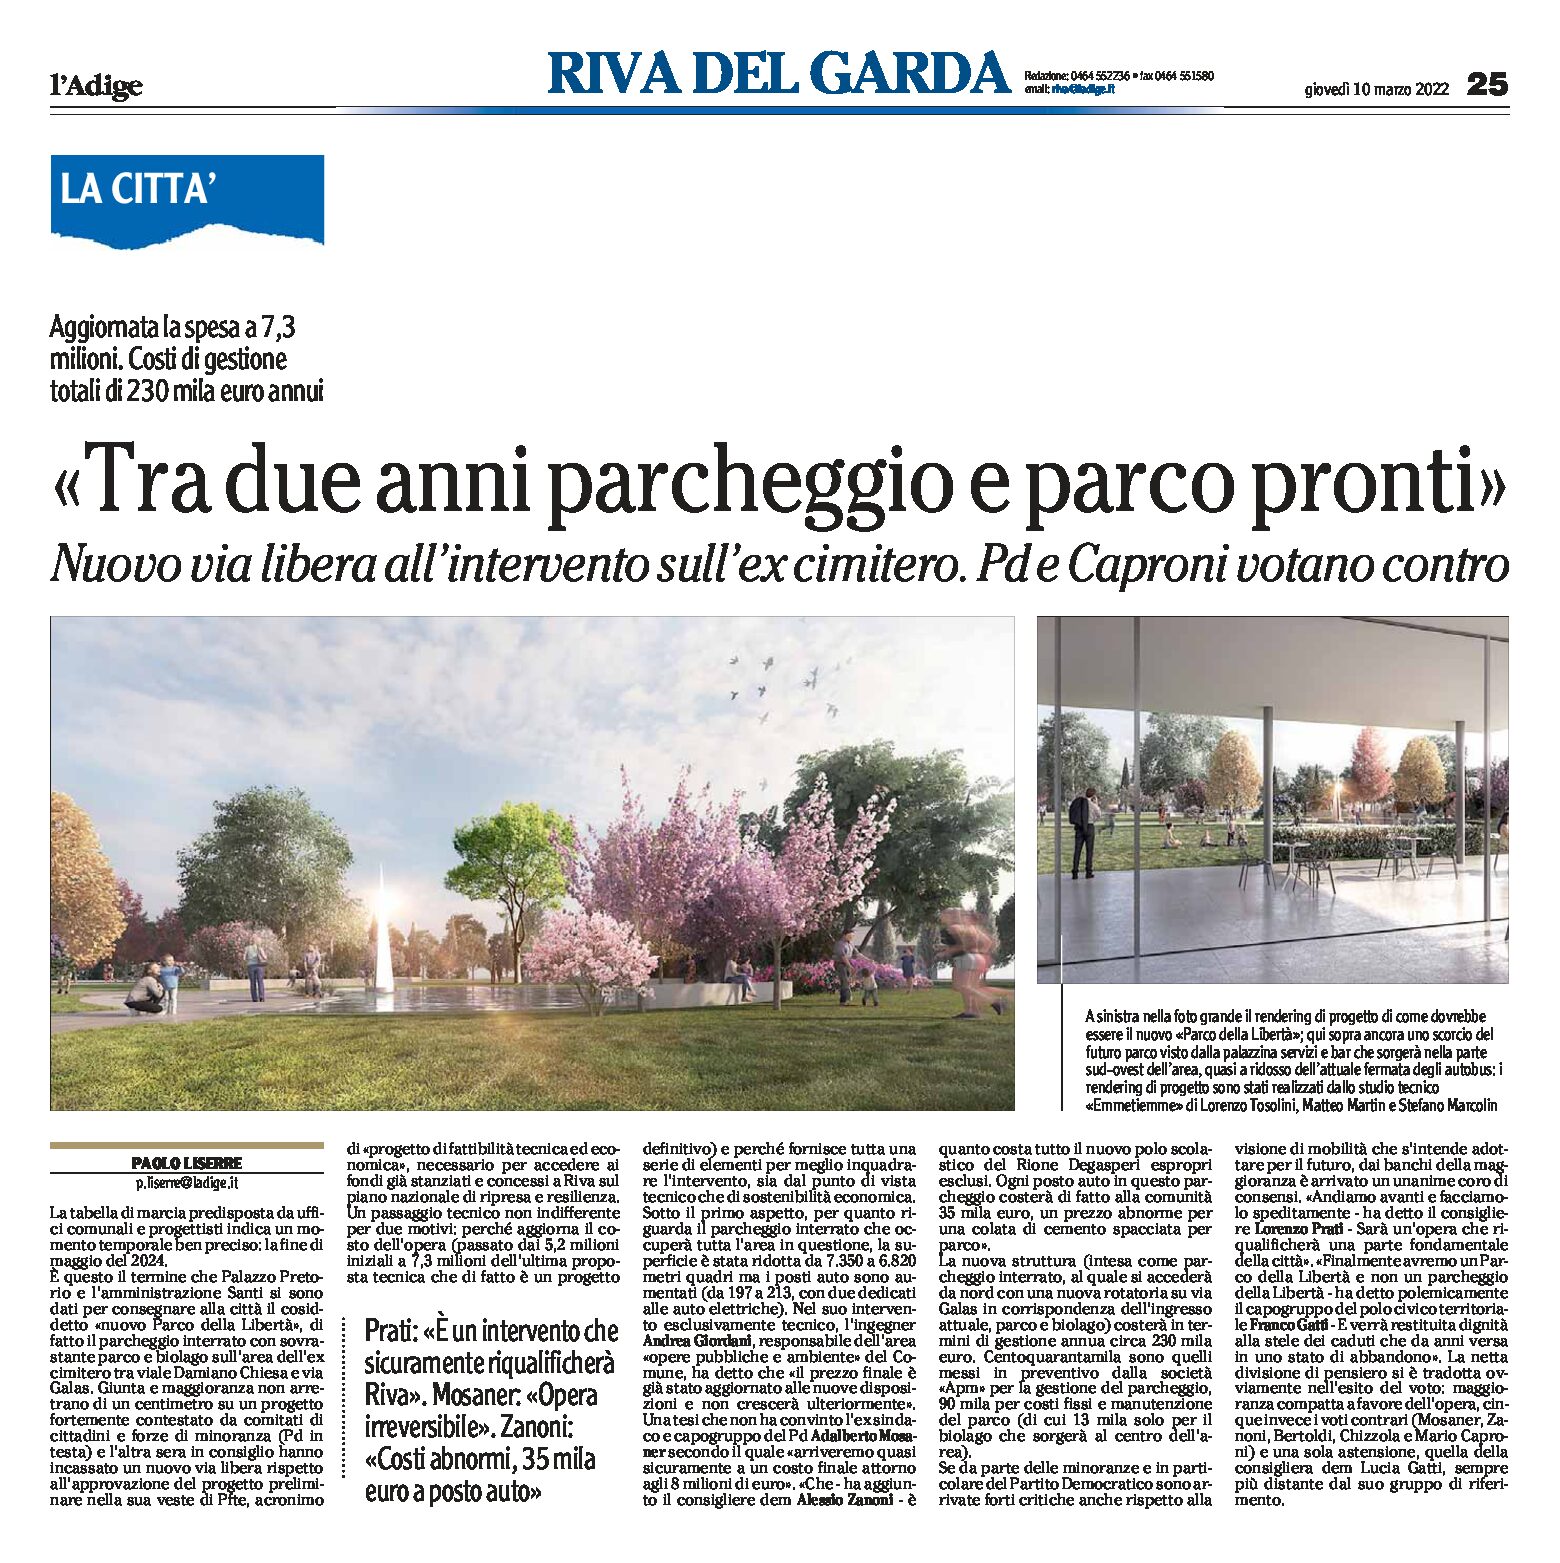 Riva, ex cimitero: nuovo via libera all’intervento “tra due anni parcheggio e parco pronti”